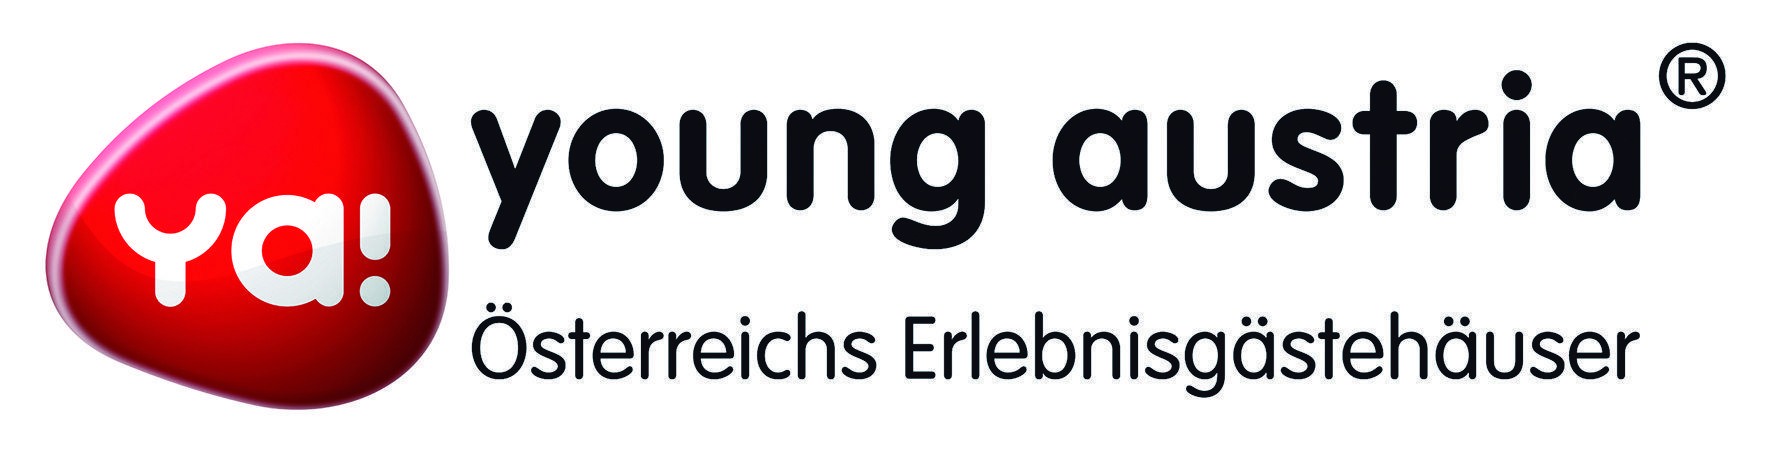 Ya Logo - Press. ya! young austria